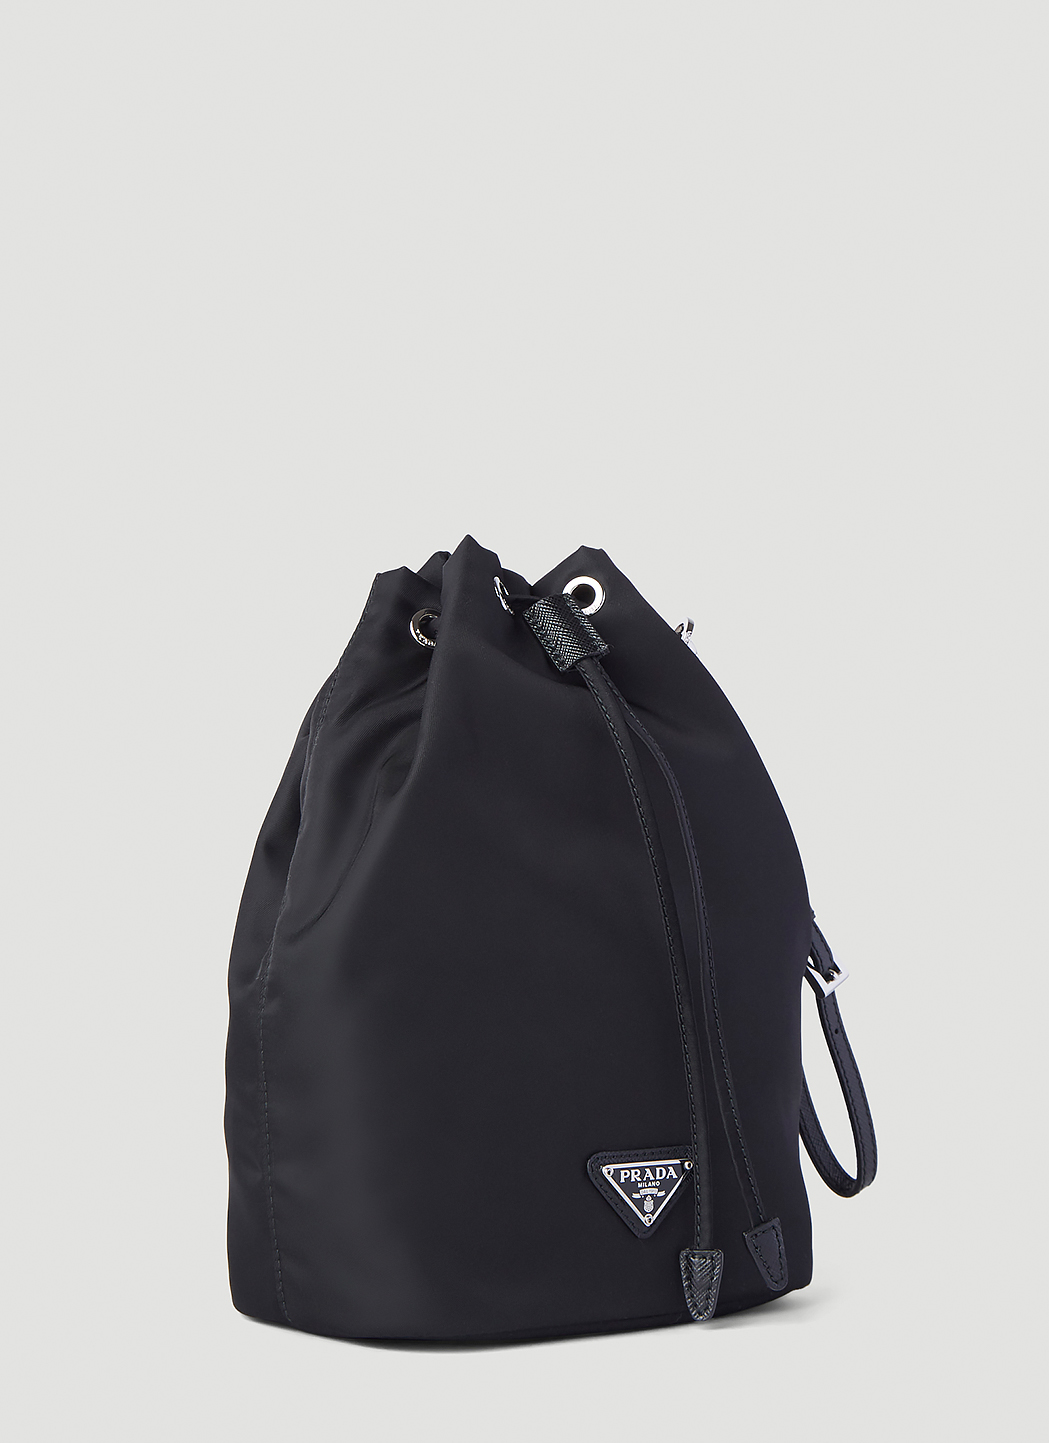 Prada Women's Drawstring Bucket Bag in Black | LN-CC